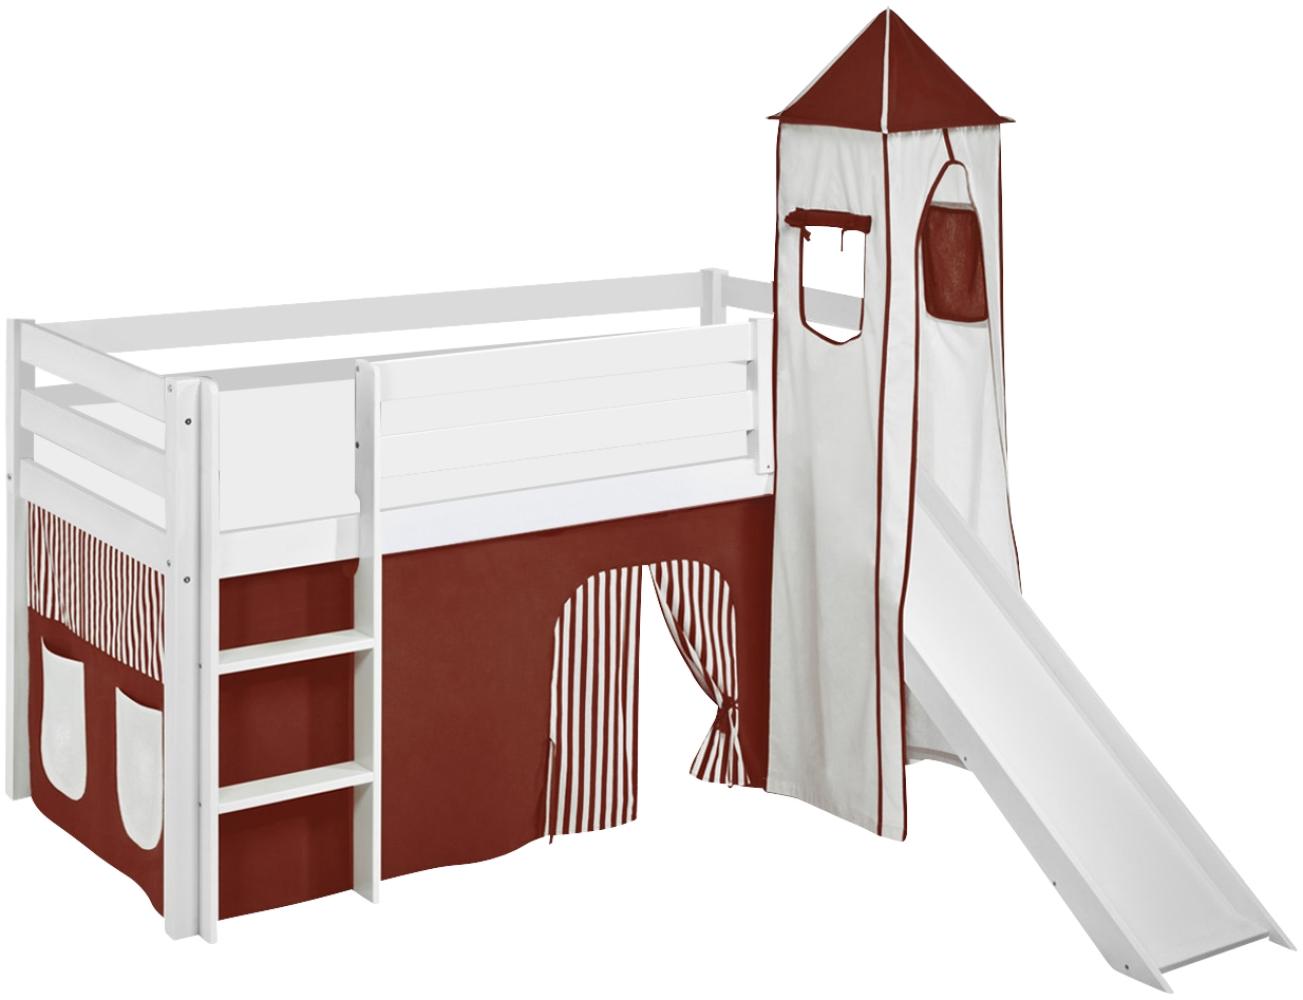 Lilokids 'Jelle' Spielbett 90 x 200 cm, Braun Beige, Kiefer massiv, mit Turm, Rutsche und Vorhang Bild 1